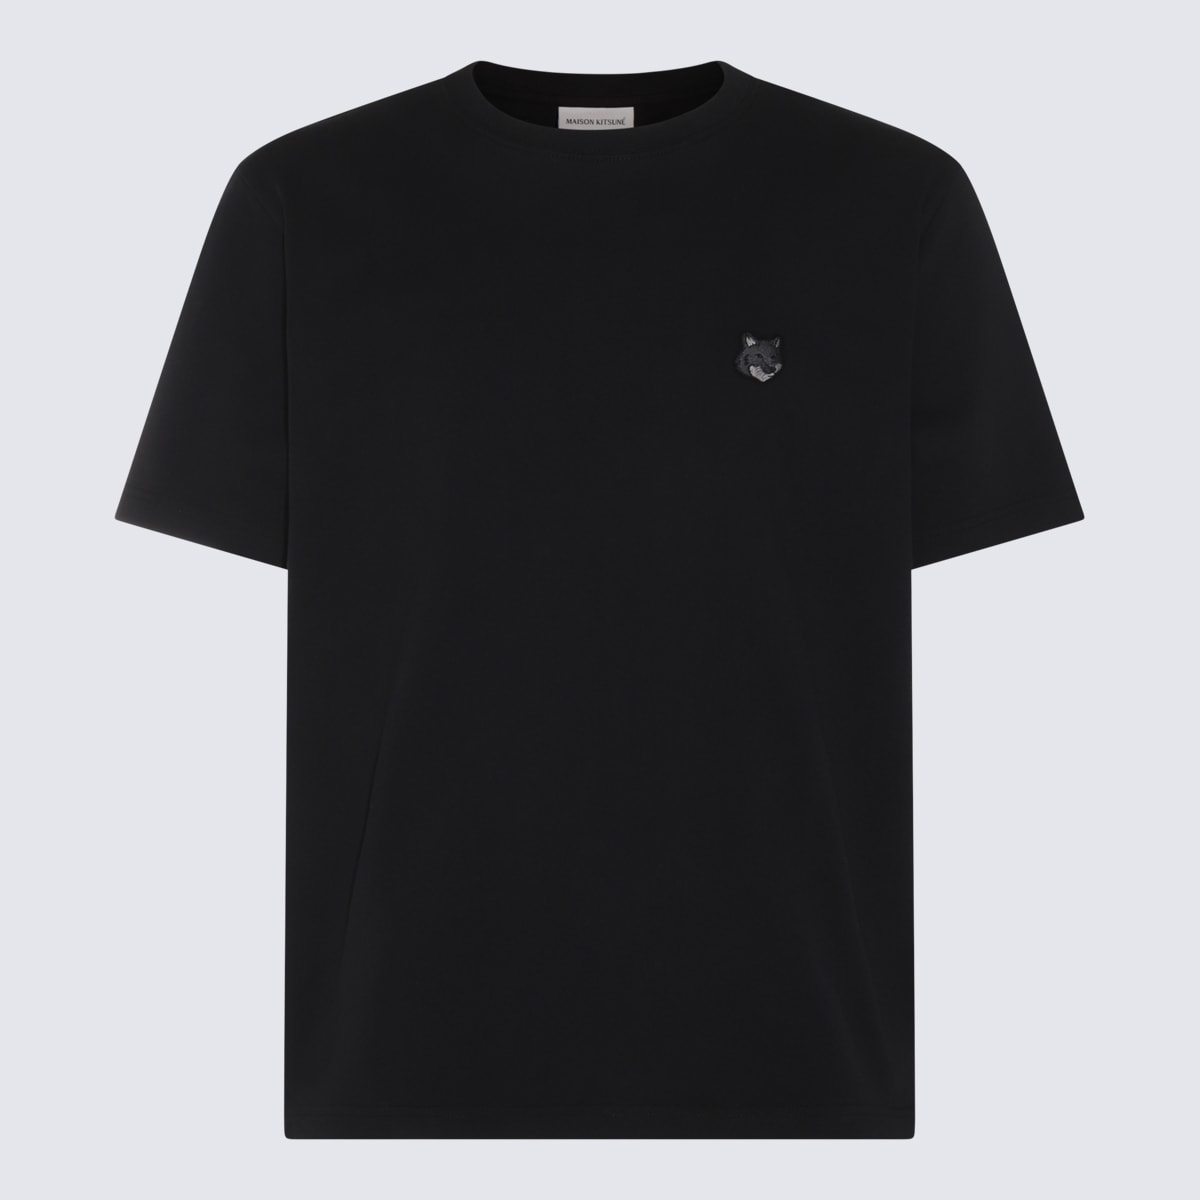 Maison Kitsuné Black Cotton T-shirt